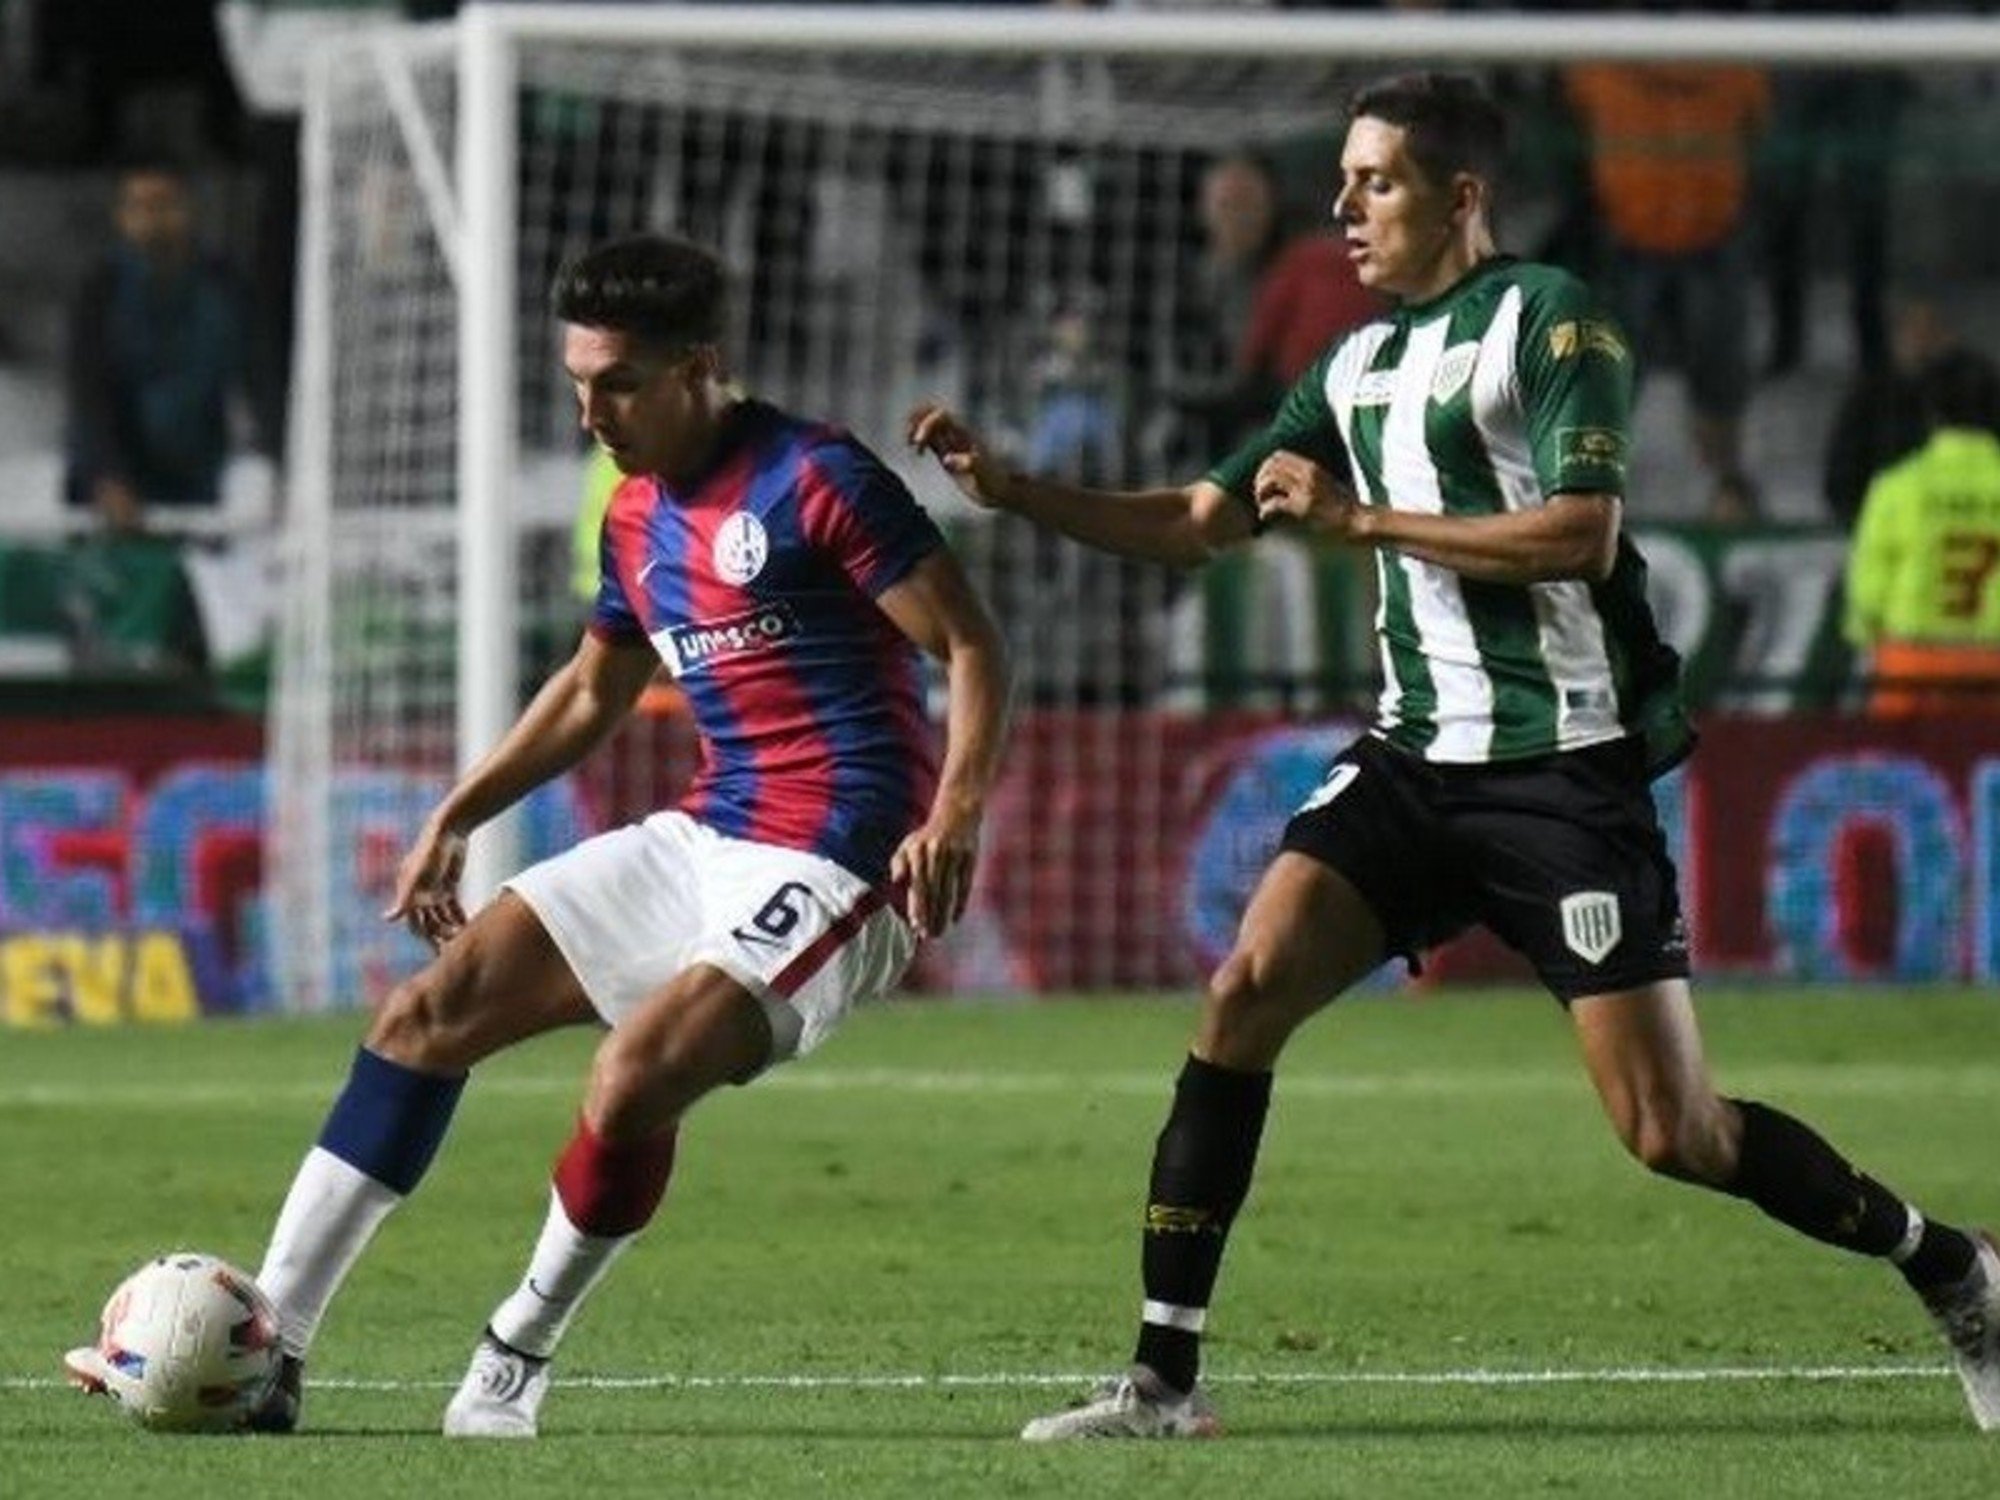 Troglio debutó en San Lorenzo con un empate en cero ante Banfield